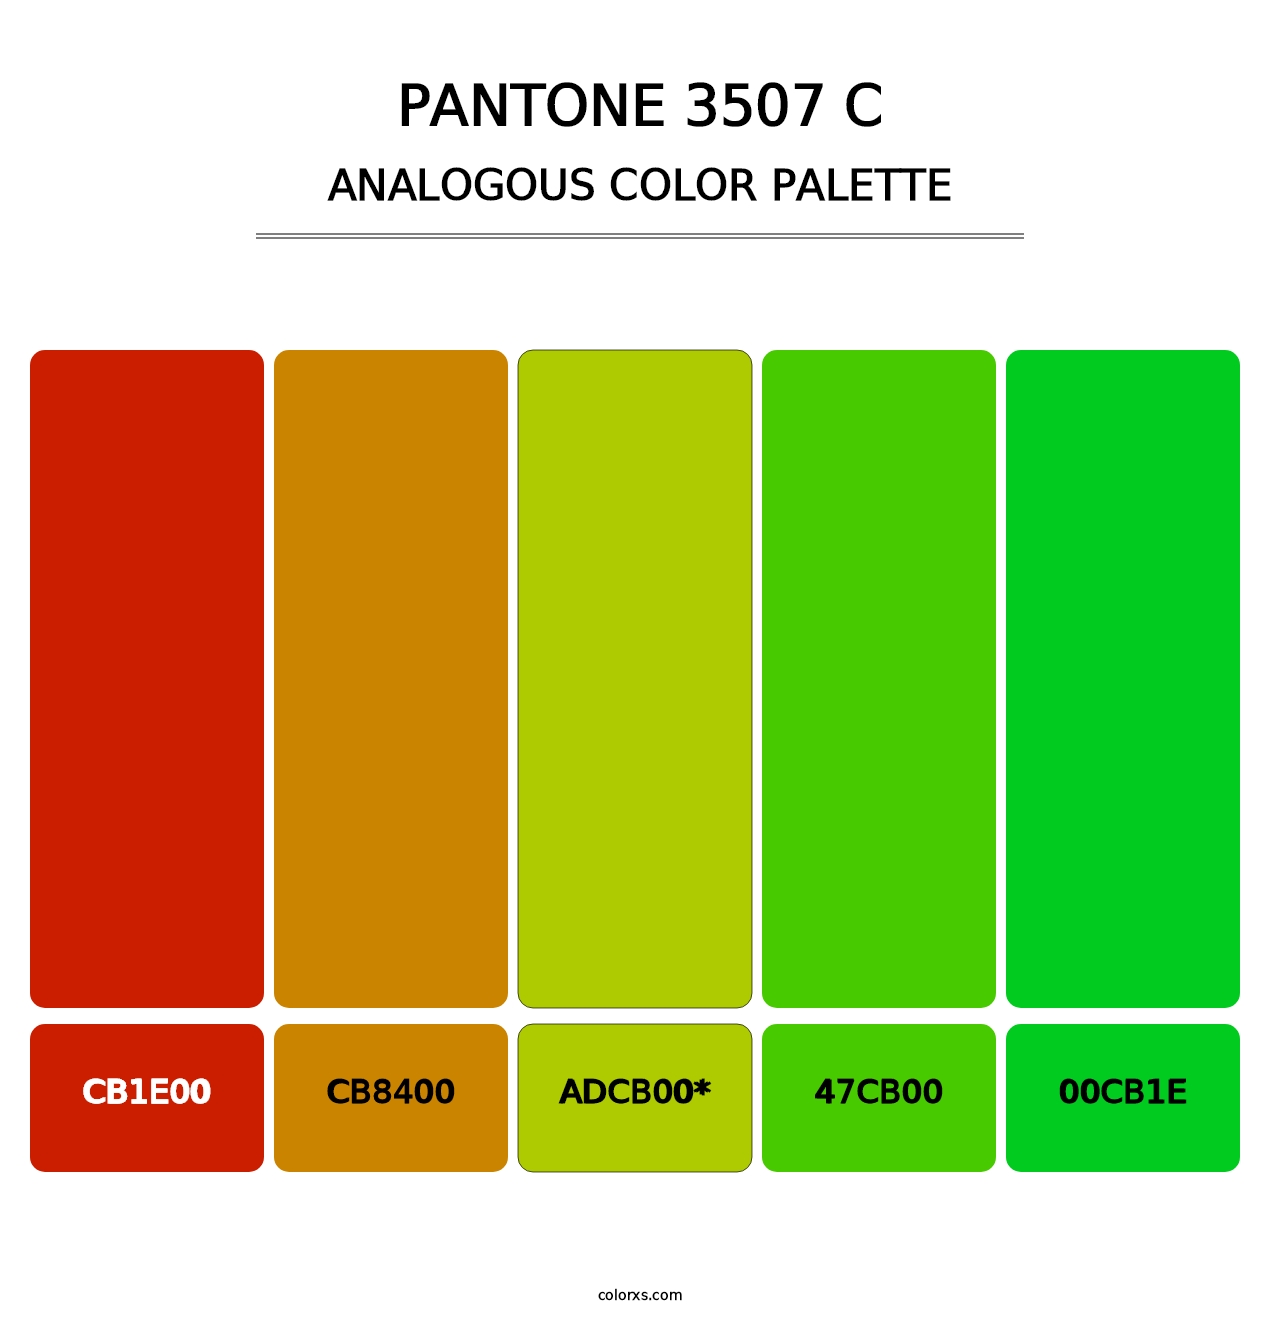 PANTONE 3507 C - Analogous Color Palette